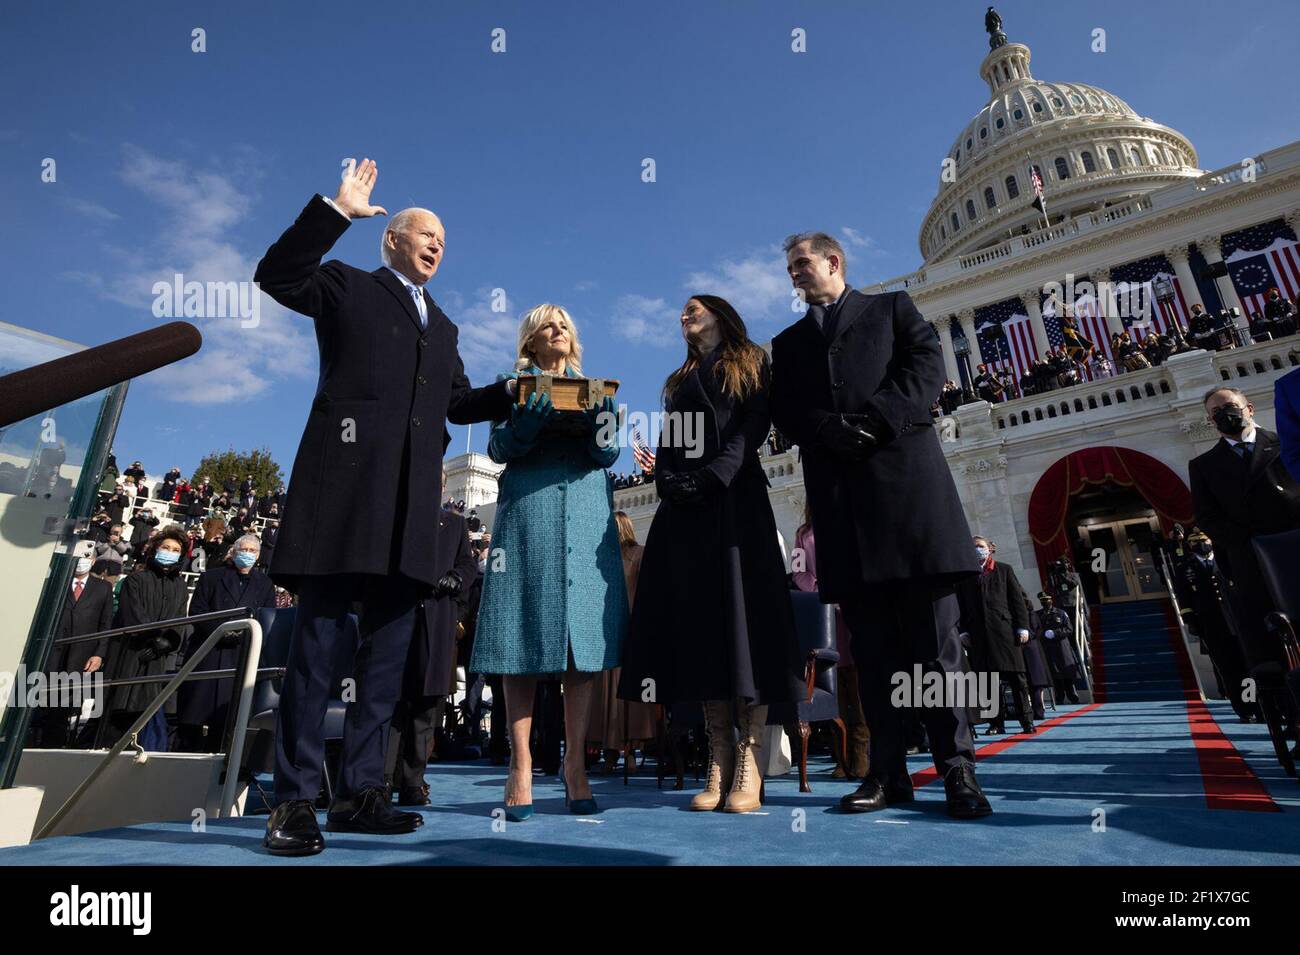 Präsident Joe Biden, zusammen mit First Lady Jill Biden und ihren Kindern Ashley Biden und Hunter Biden, nimmt den Amtseid als Präsident der Vereinigten Staaten Mittwoch, 20. Januar 2021, während der Amtseinführung 59th im US-Kapitol in Washington, D.C. Stockfoto